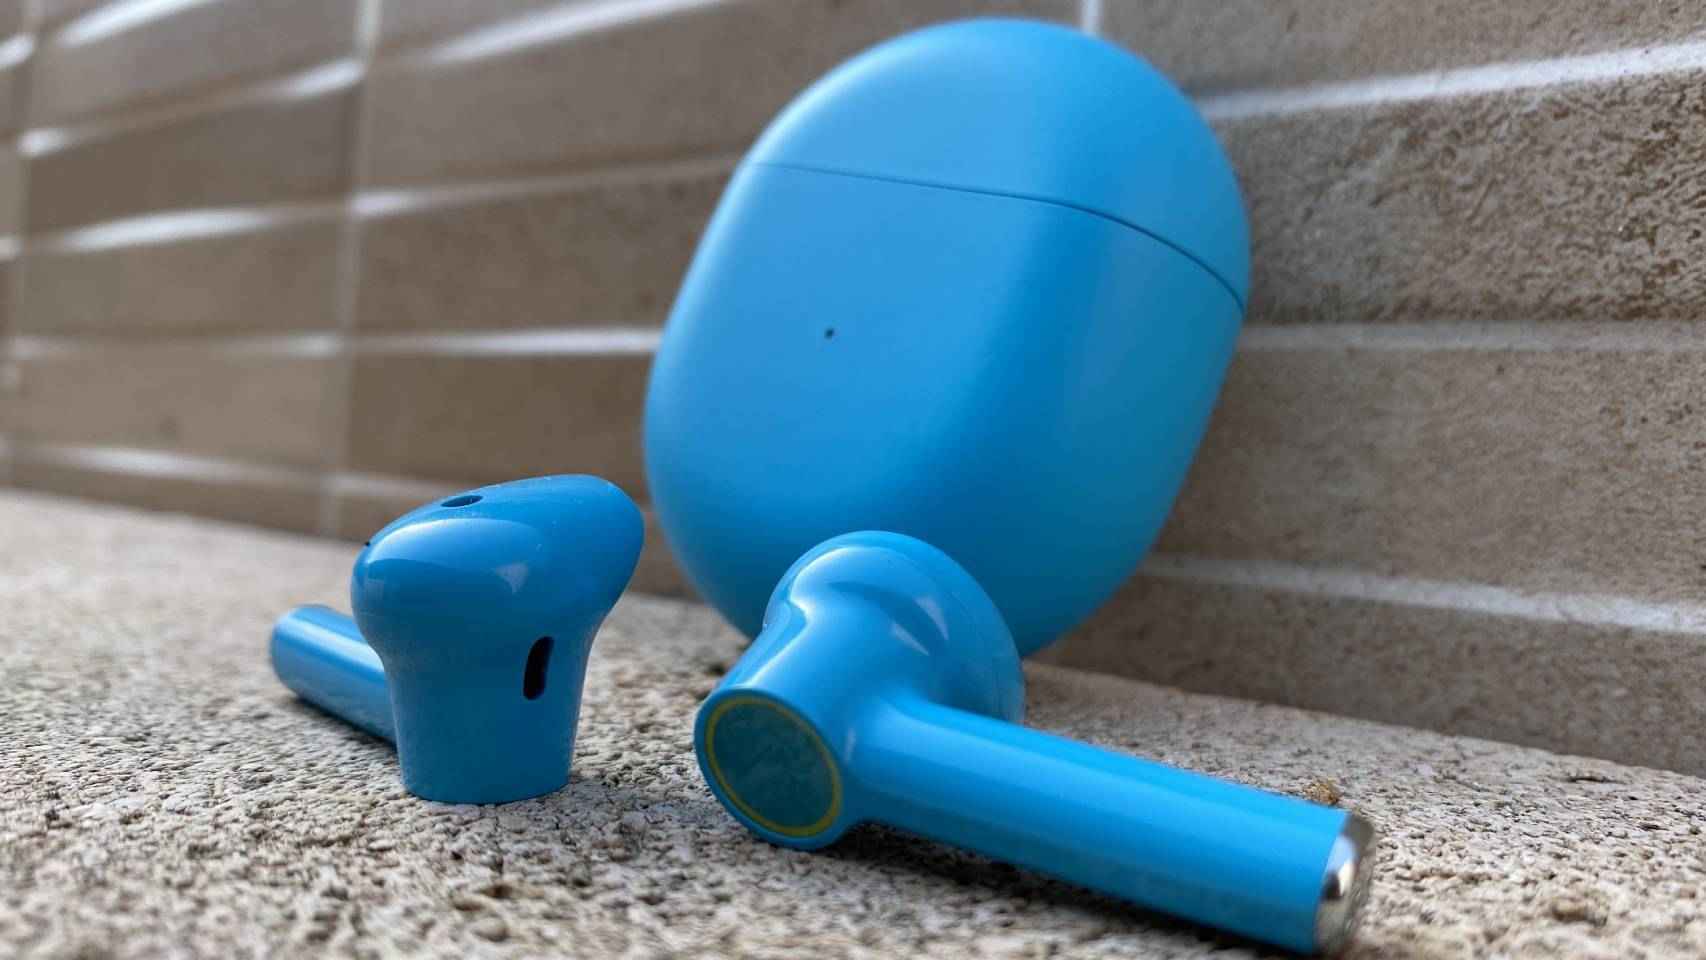 En color azul, los OnePlus Buds se notan más originales